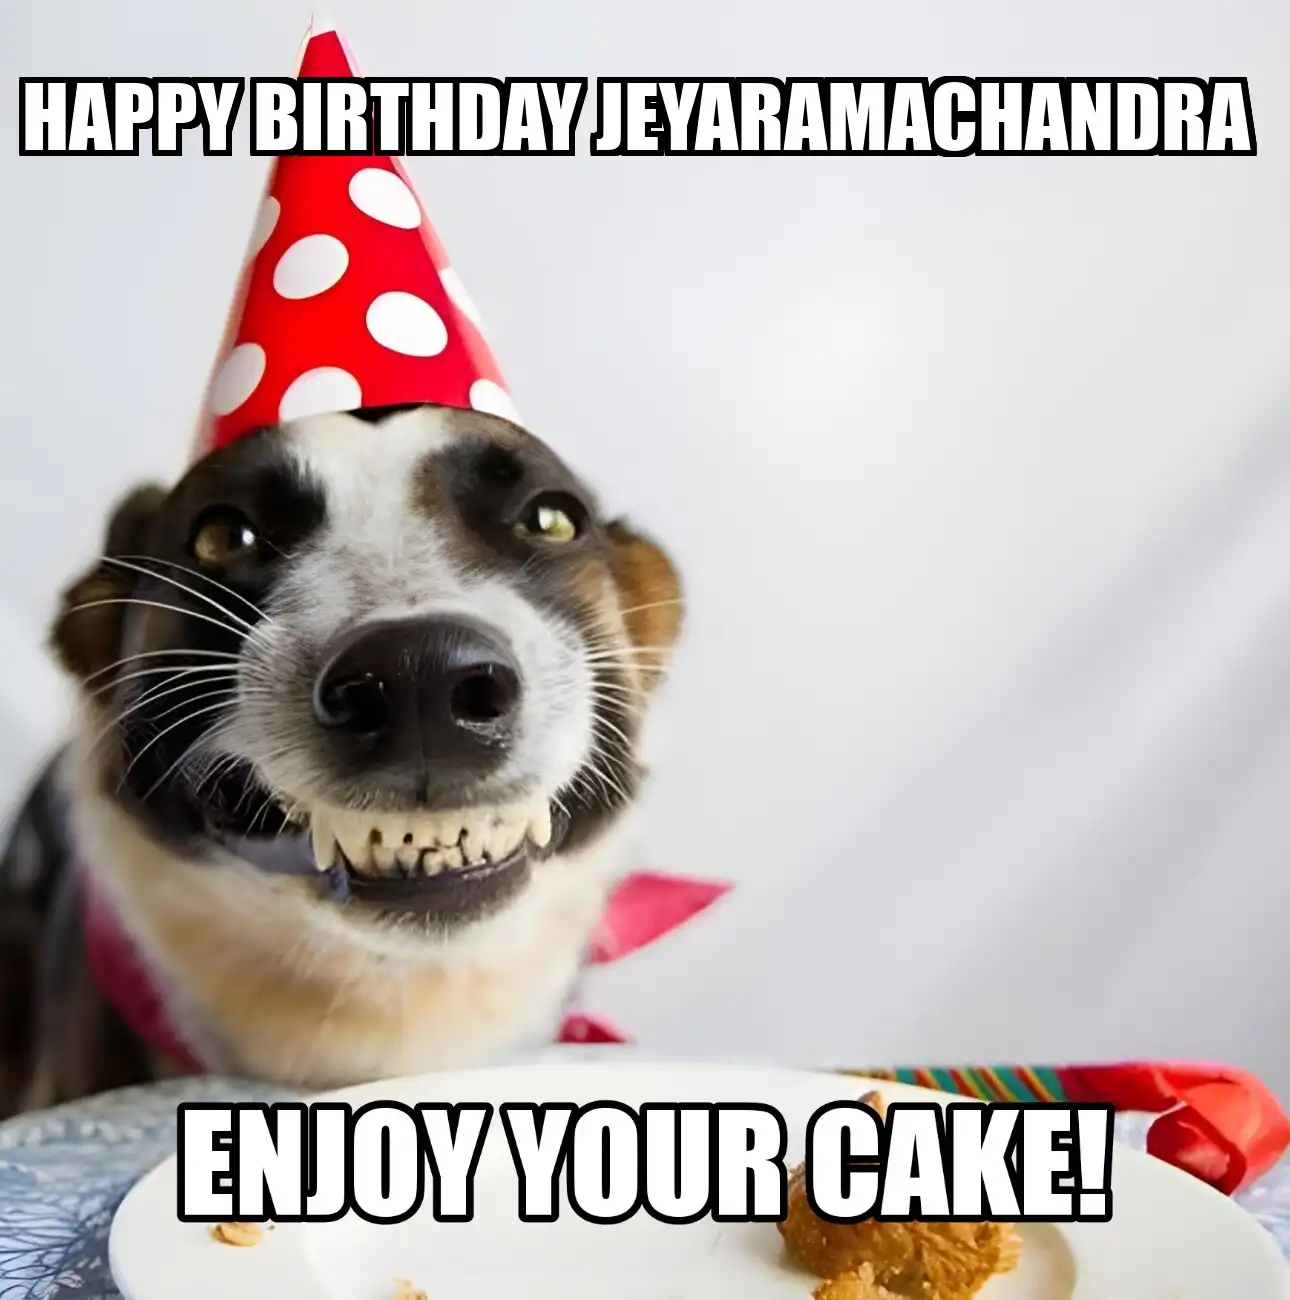 Happy Birthday Jeyaramachandra Enjoy Your Cake Dog Meme